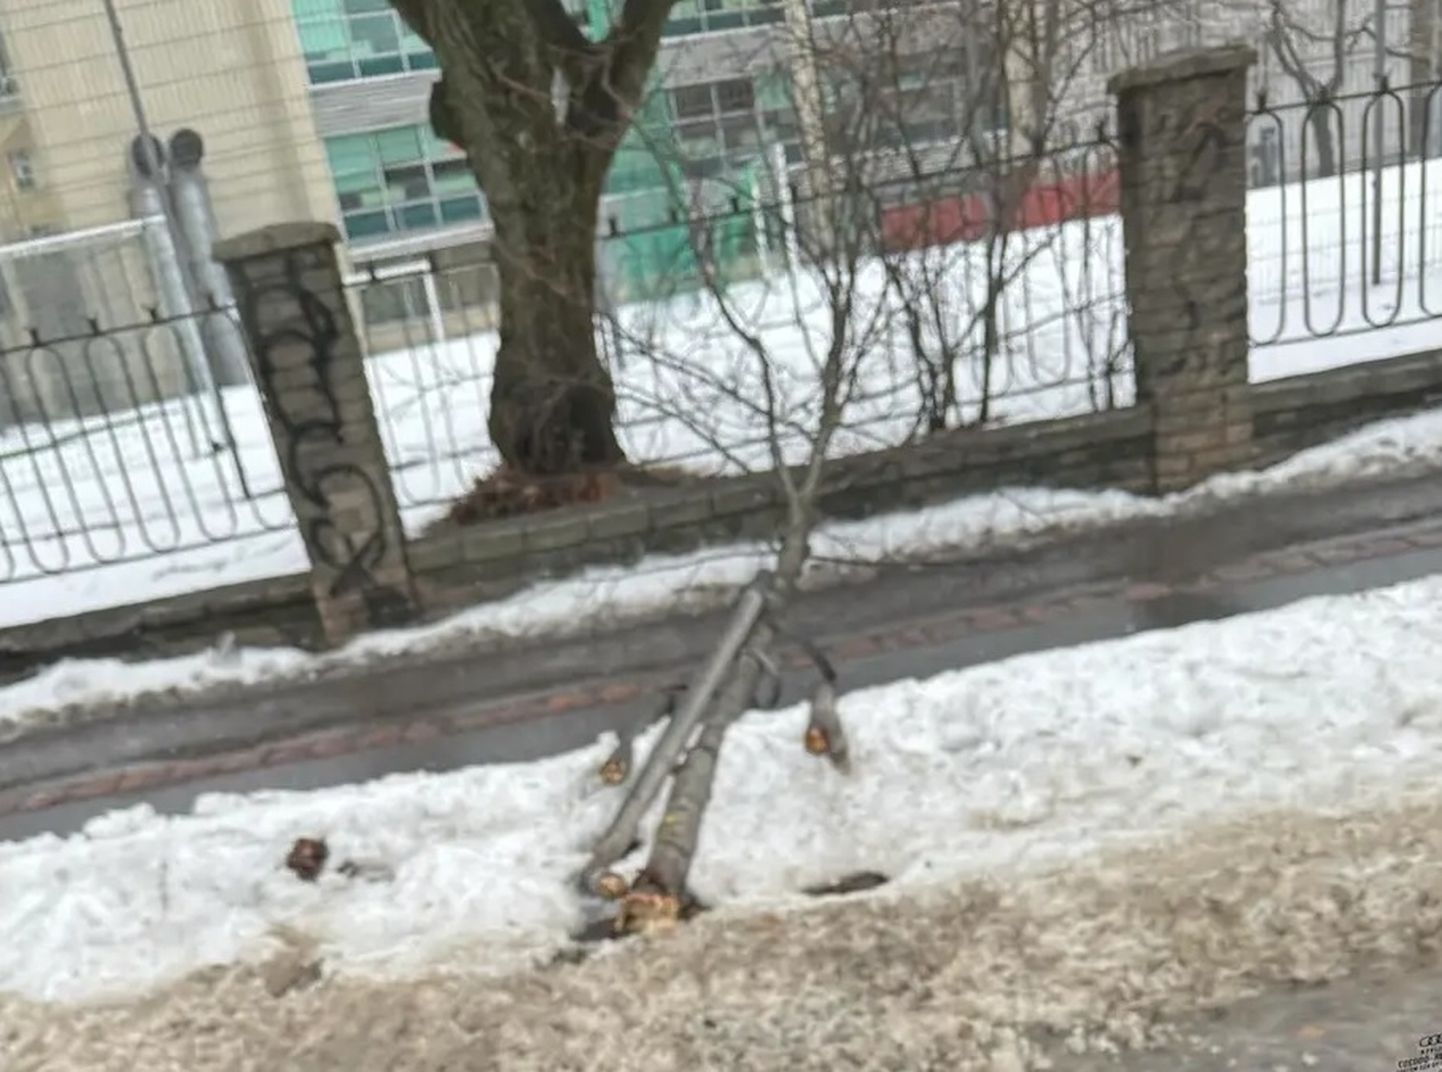 Eksinud liinibuss murdis Tallinnas tagurdades puu.